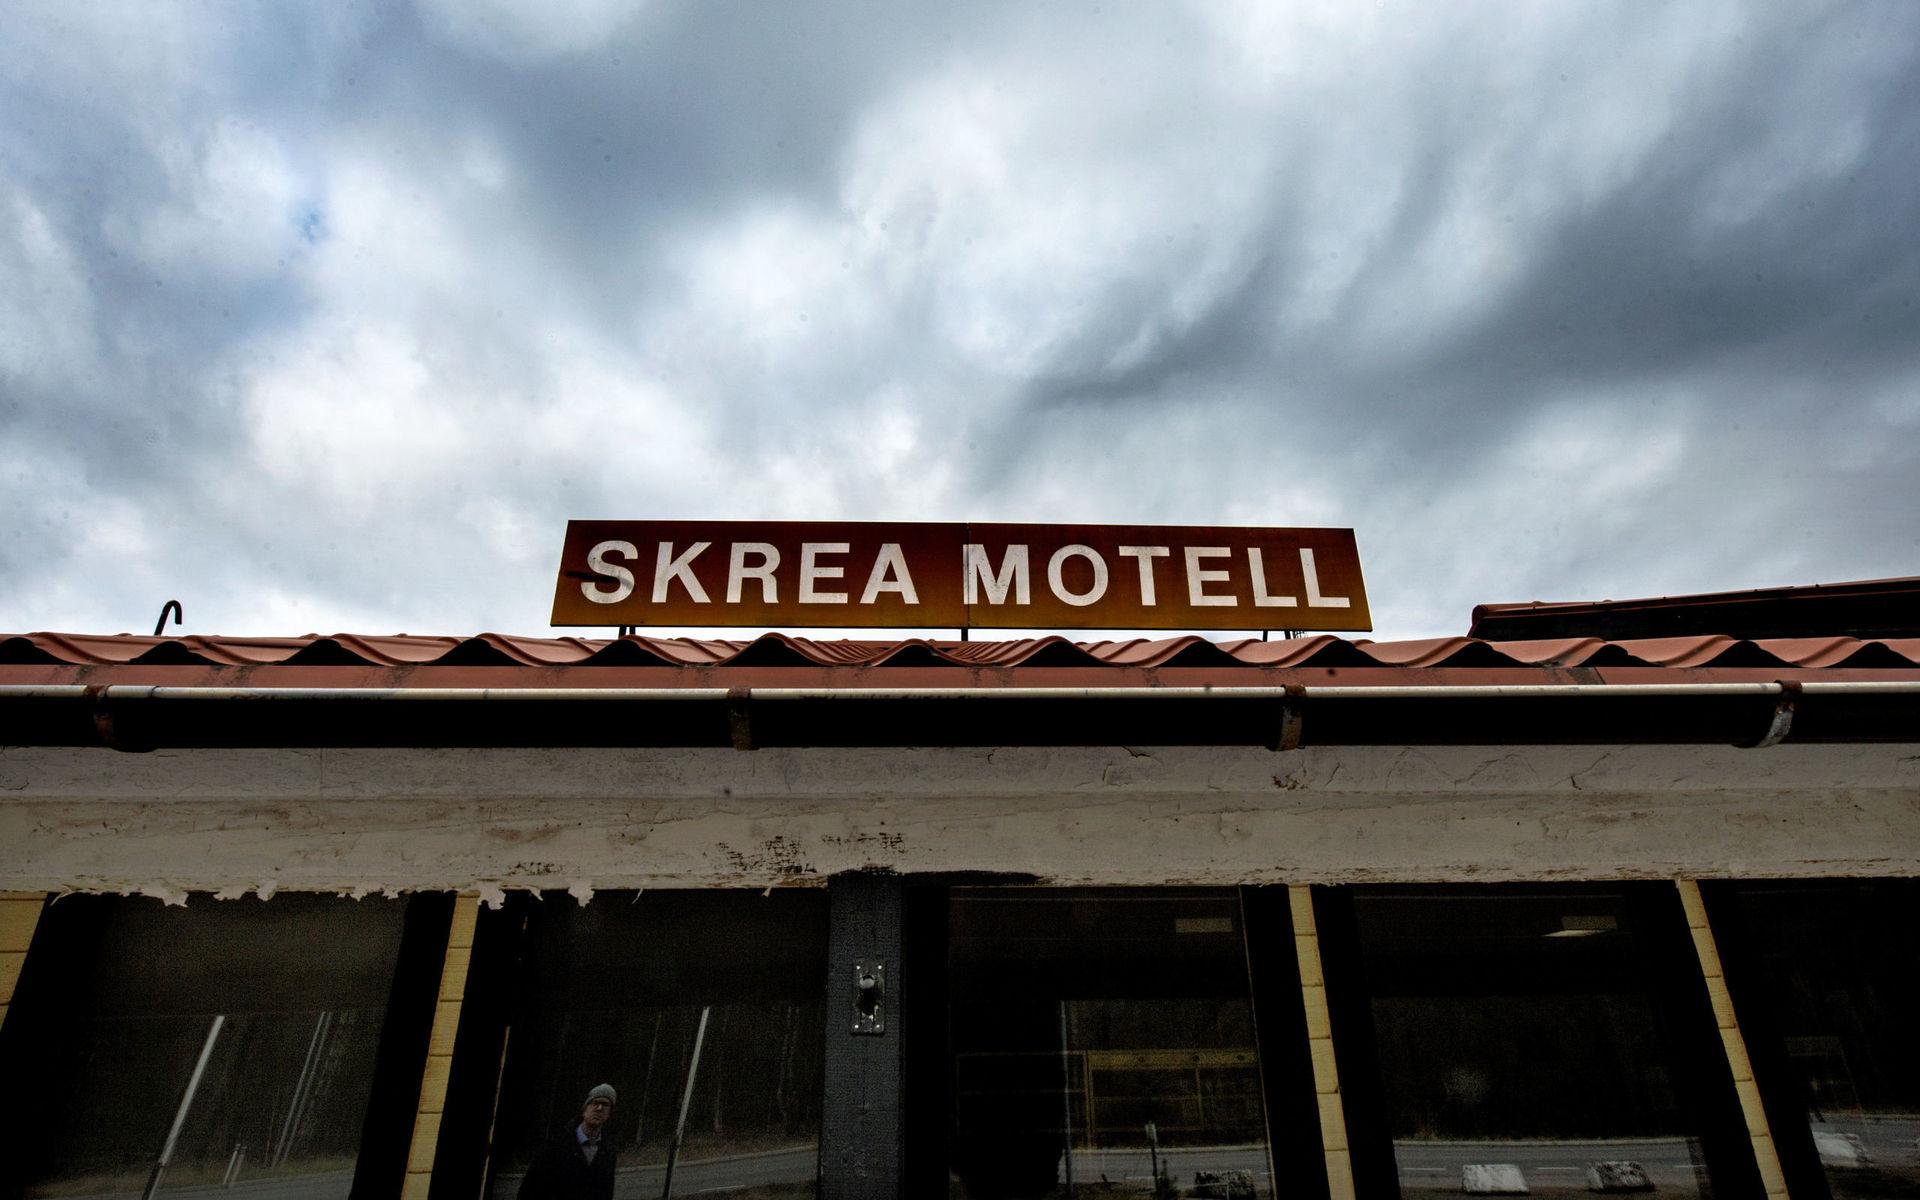 Skrea motell hade sin storhetstid på 1960-, 70- och 80-talet.